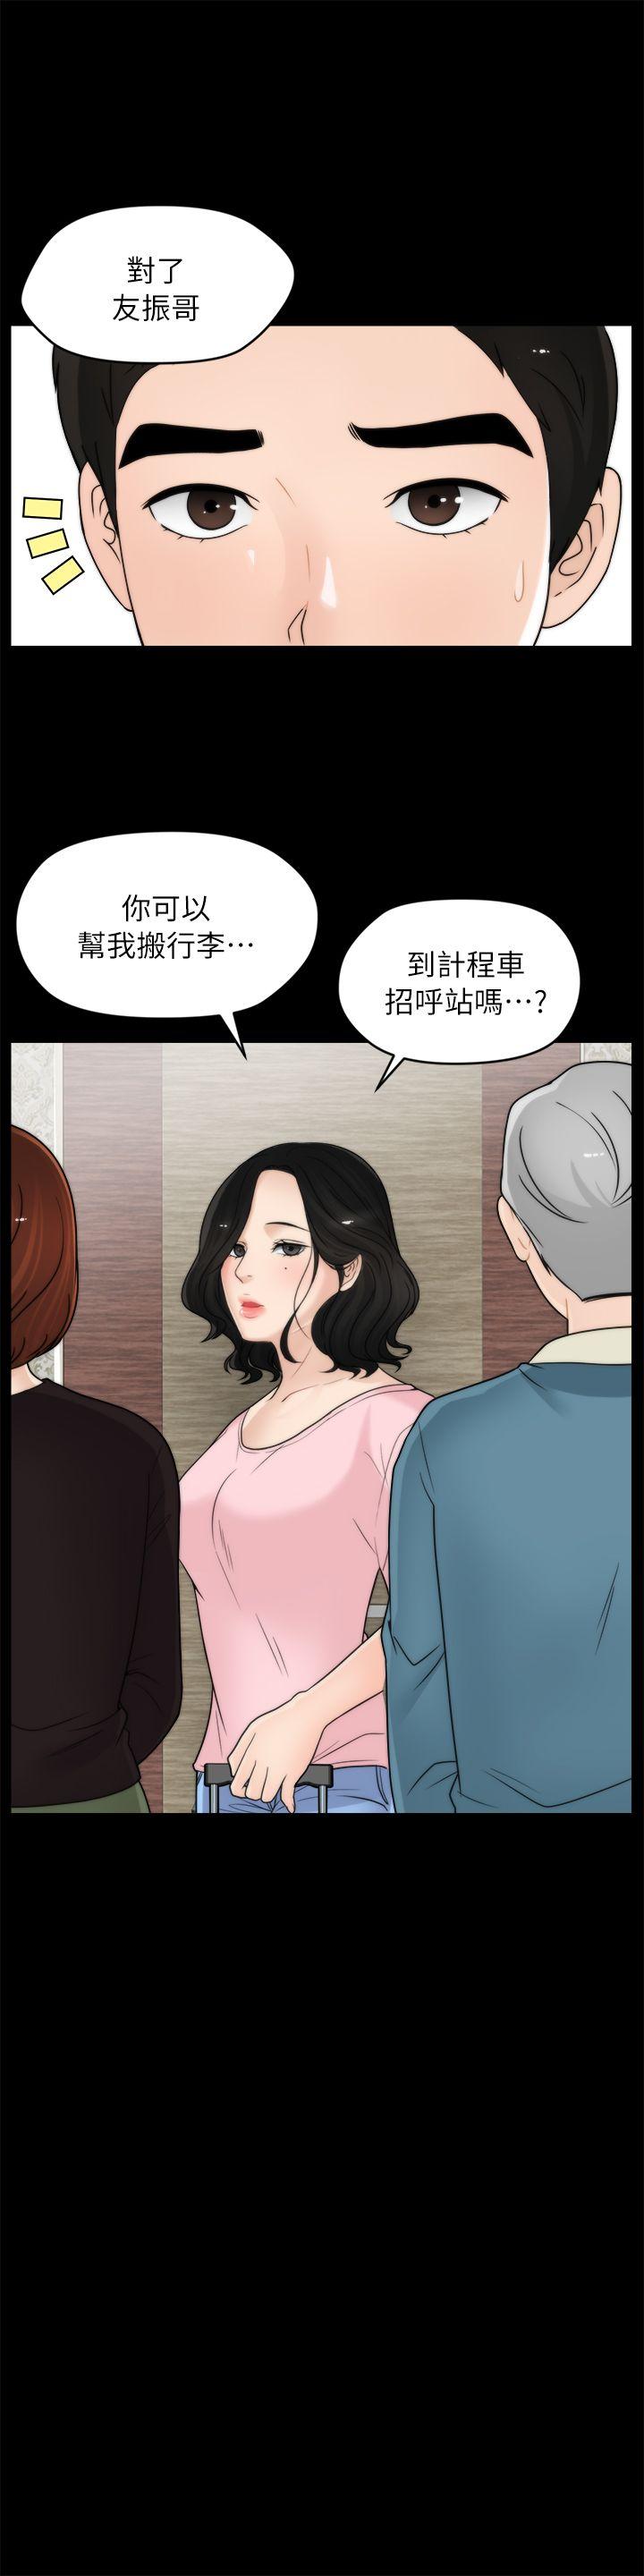 韩国污漫画 偷偷愛 第18话-小女儿 9